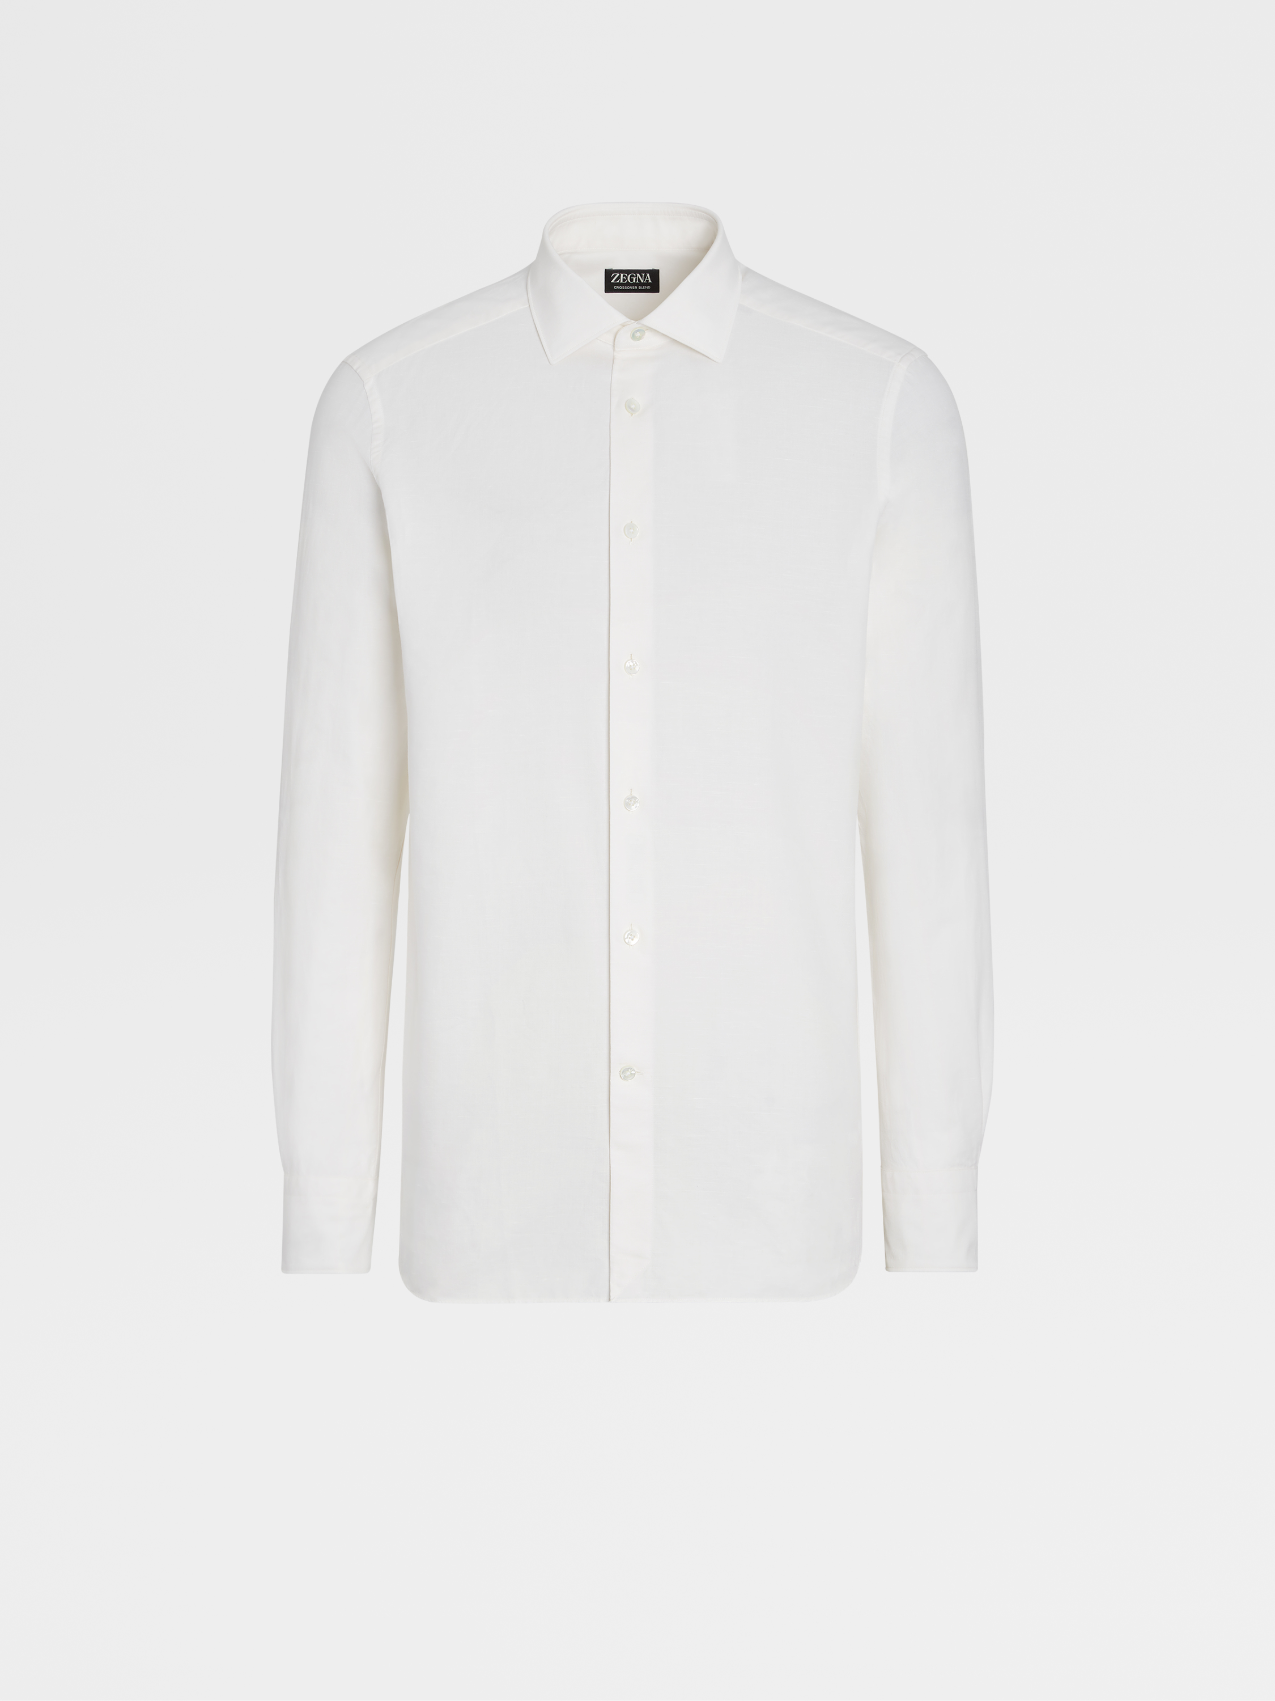 米白色 Crossover 棉质亚麻及桑蚕丝混纺长袖精裁衬衫